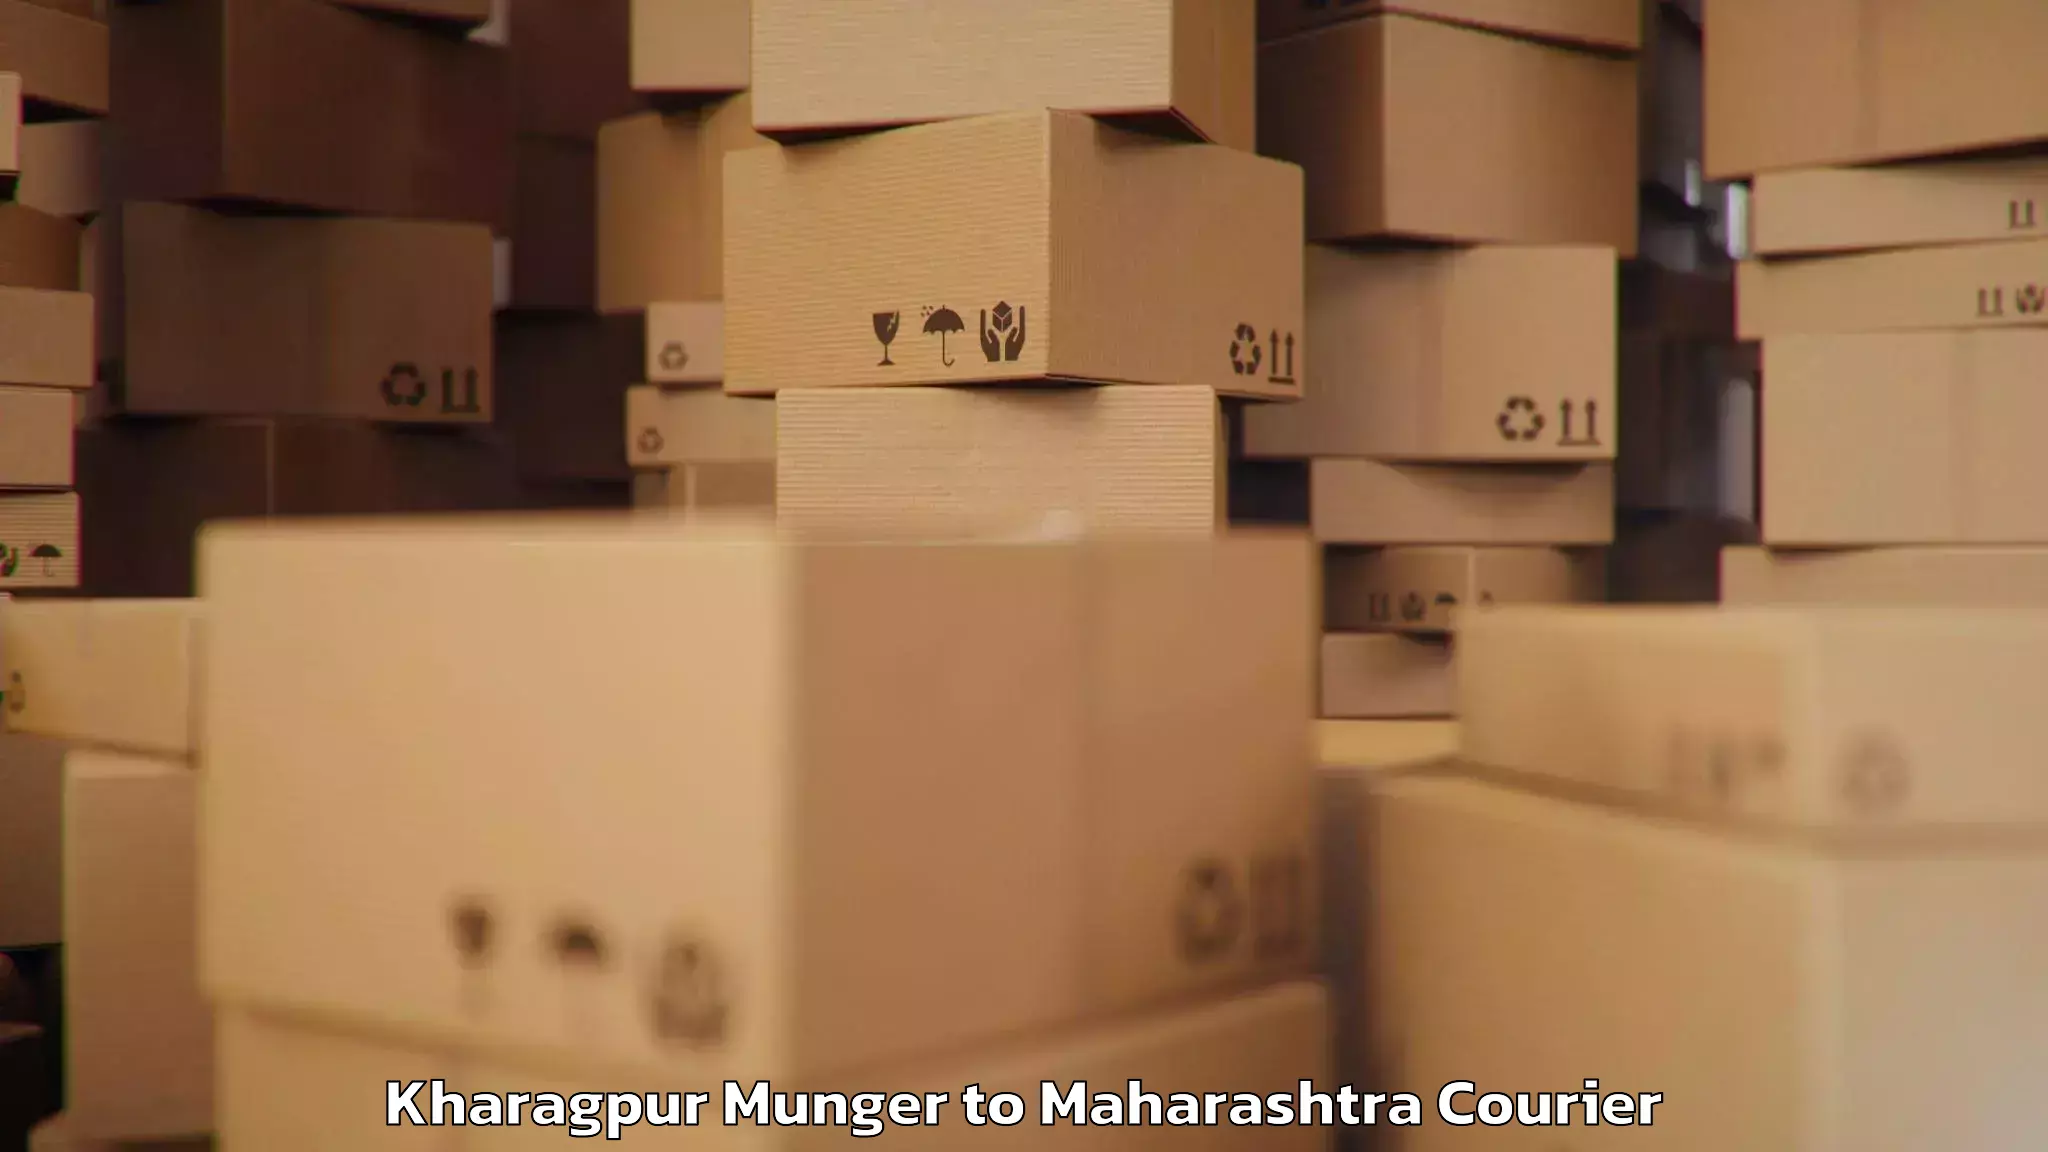 Luggage shipment tracking in Kharagpur Munger to Nandurbar